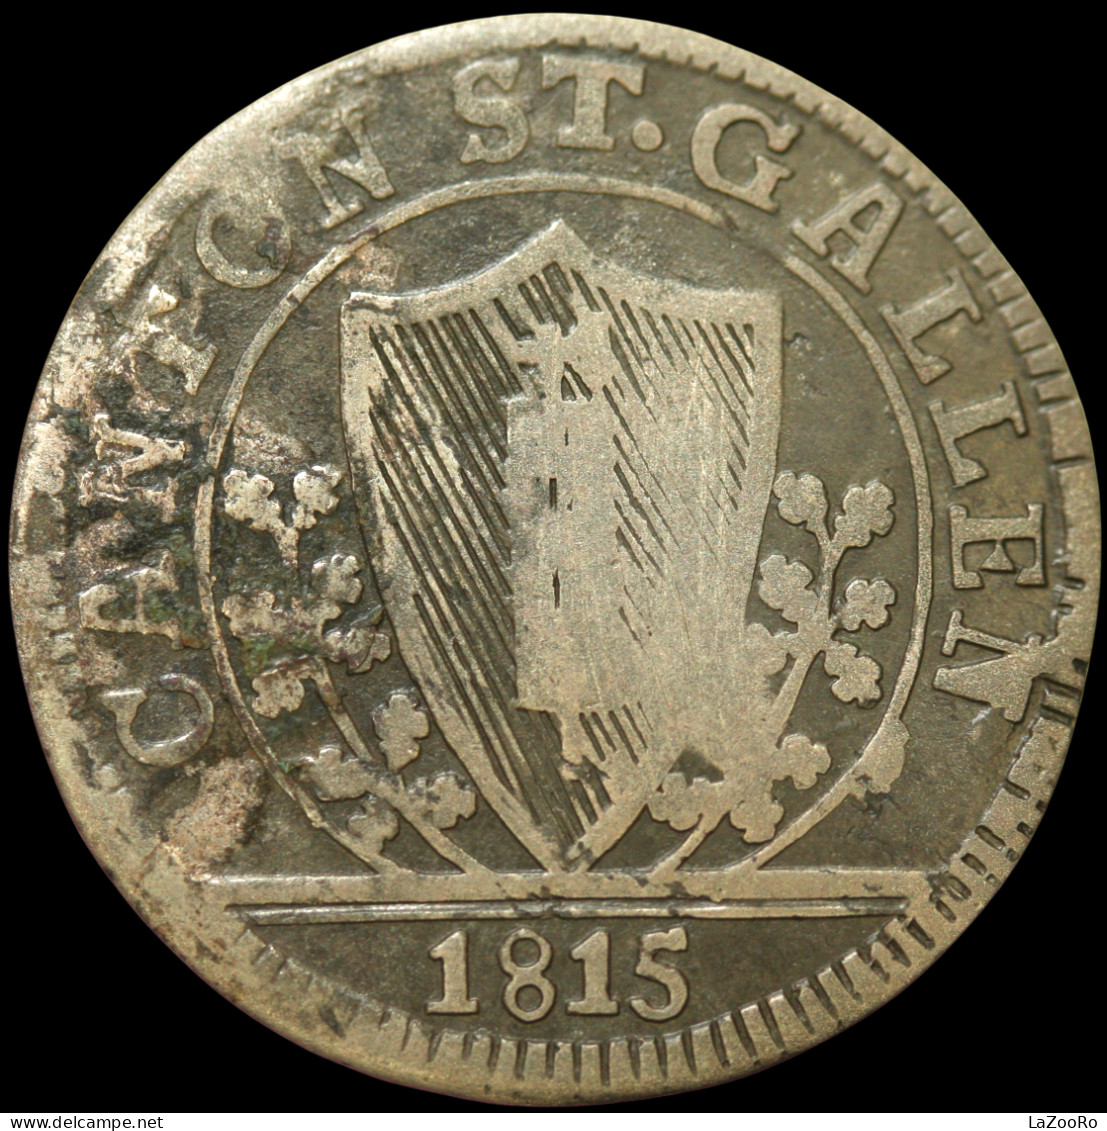 LaZooRo: Switzerland SAINT GALL 1 Batzen 1815 VF - Silver - Monedas Cantonales